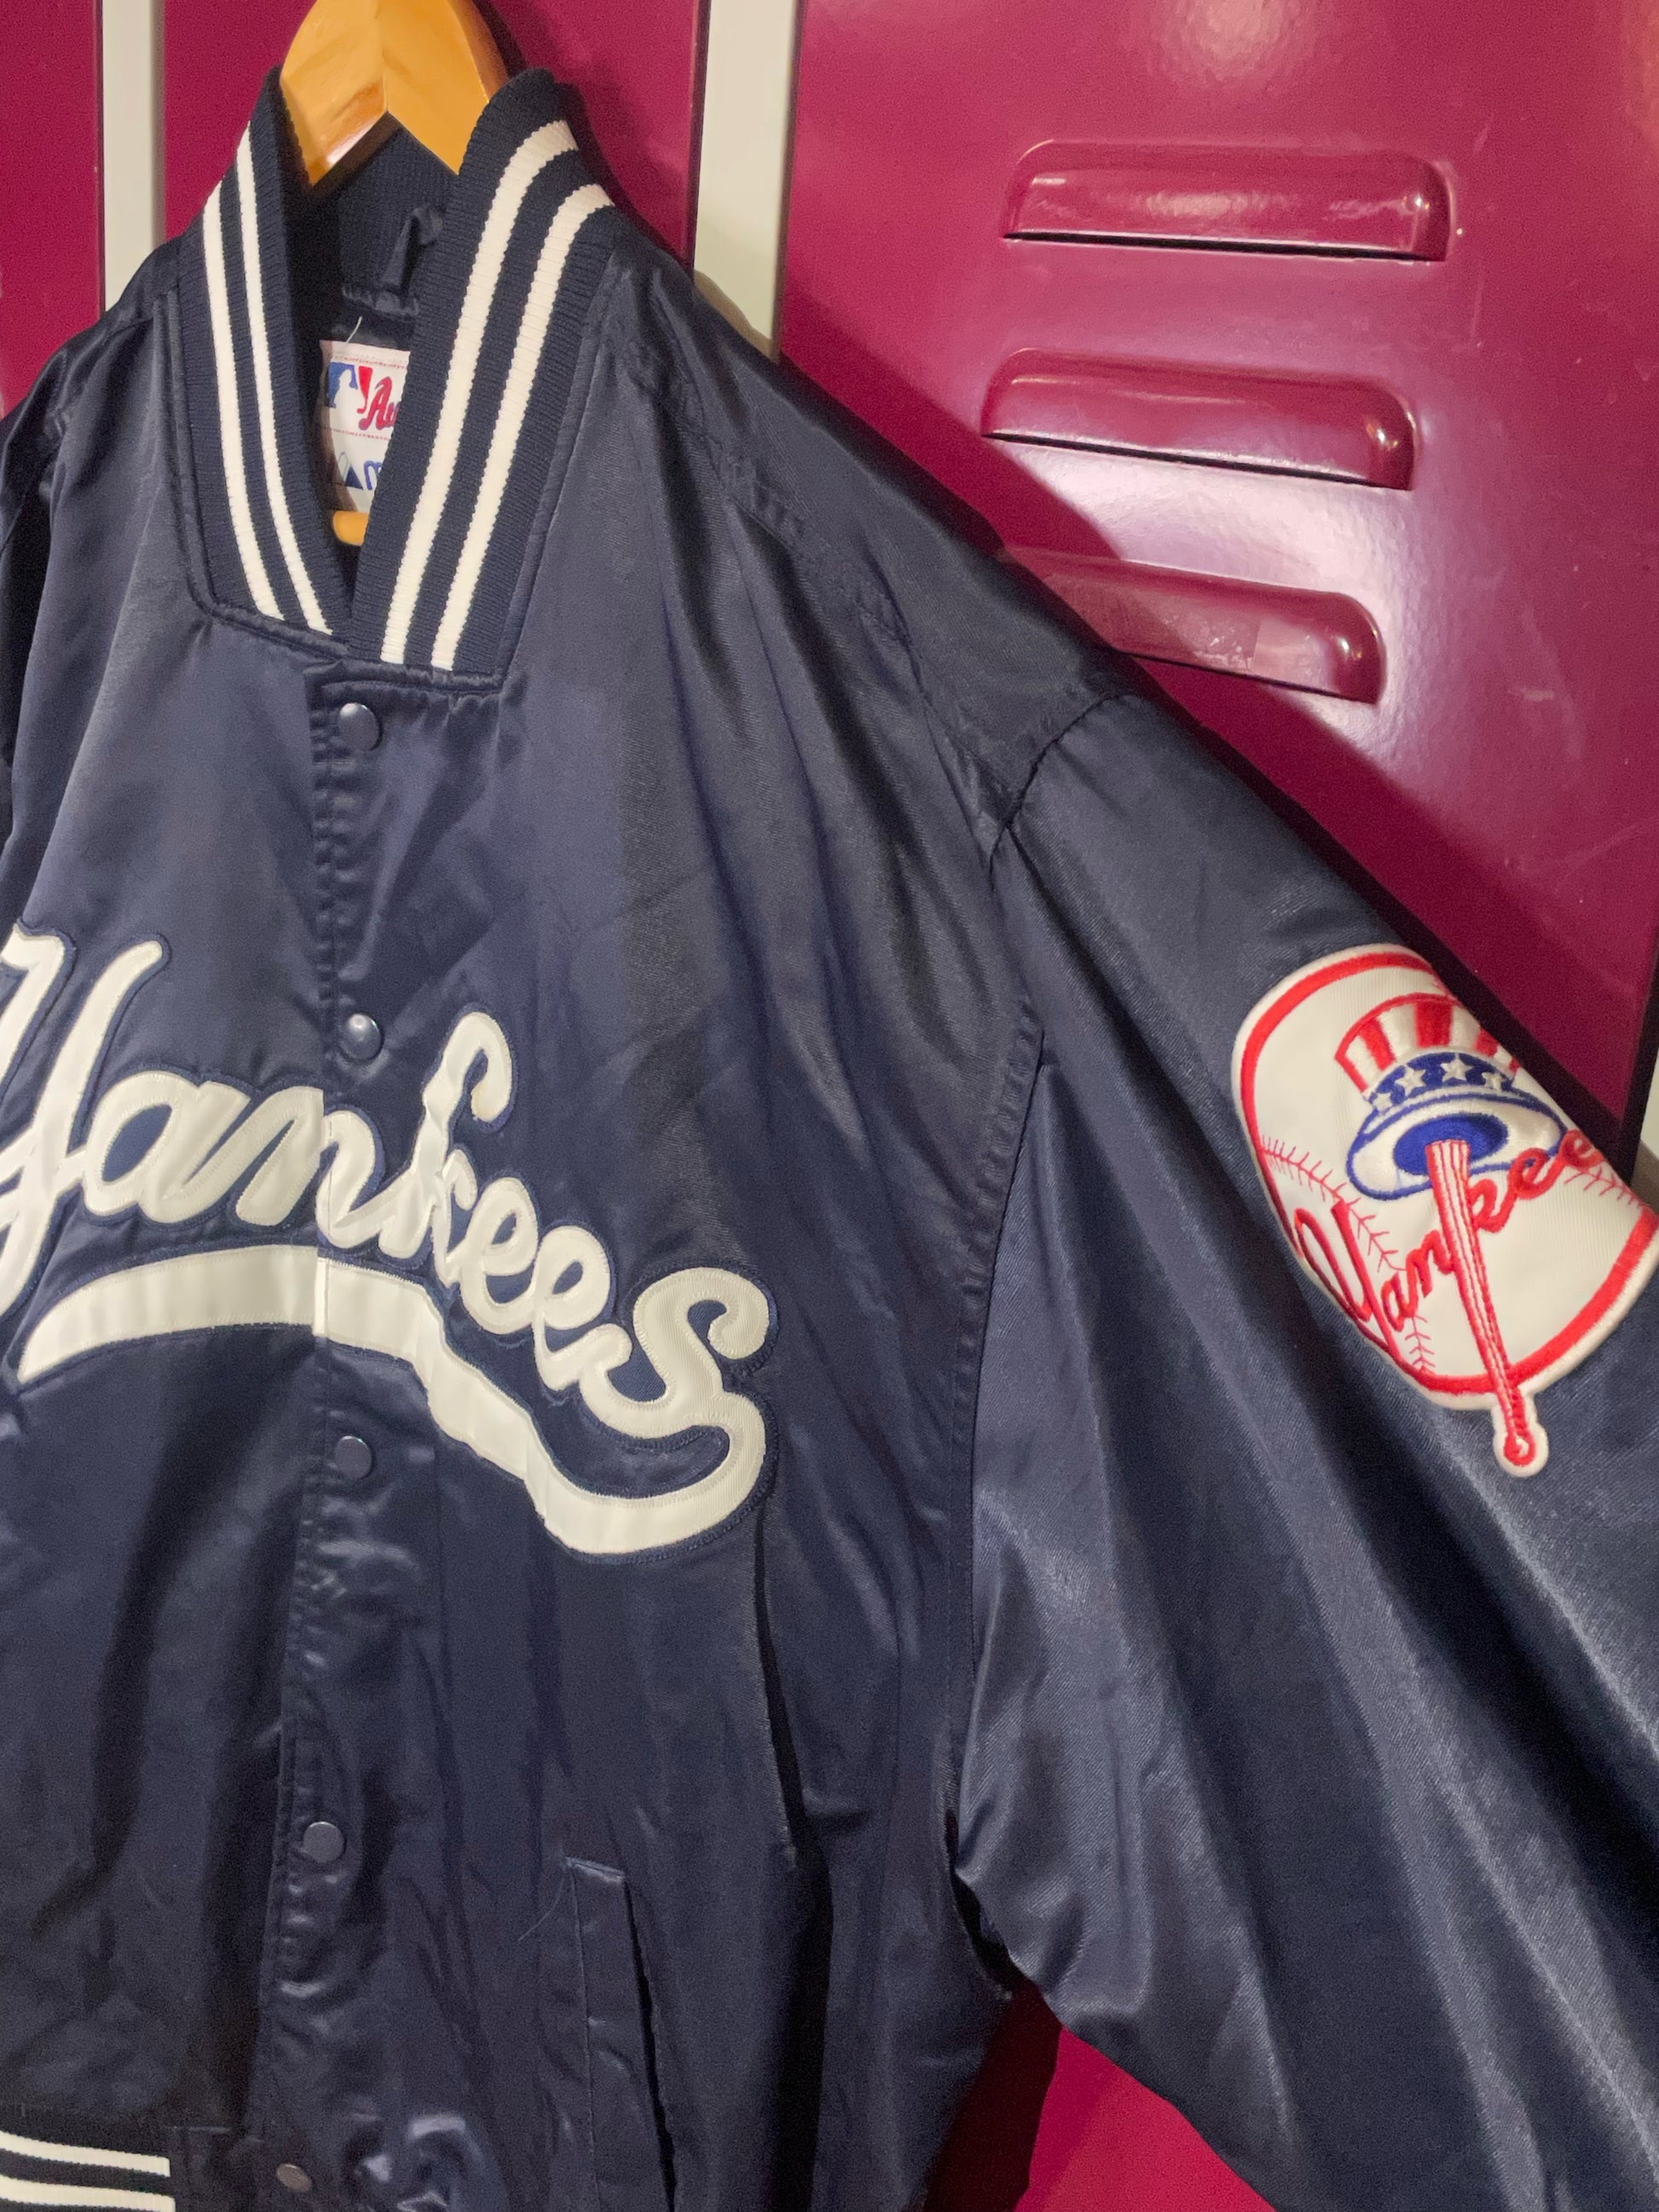 Majestic, Jackets & Coats, New York Yankees Jacket